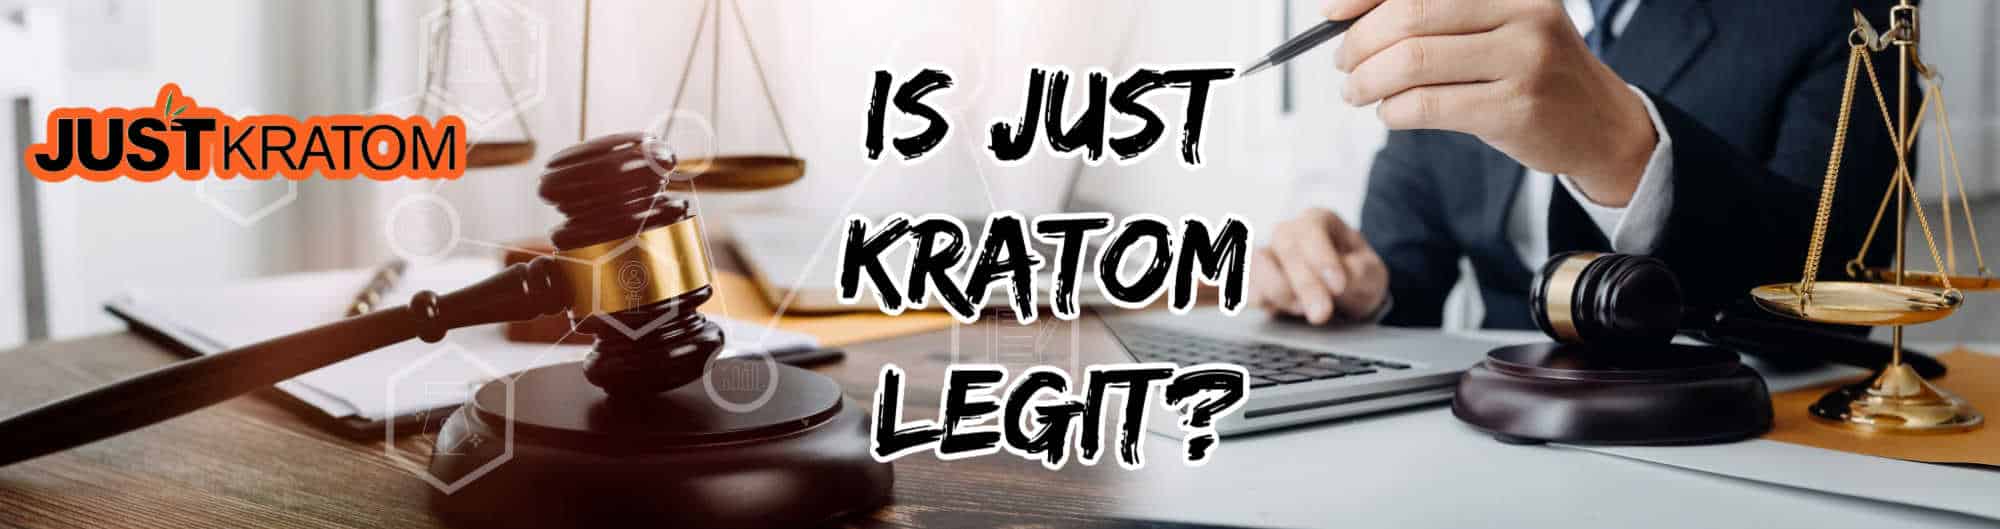 image of is just kratom legit